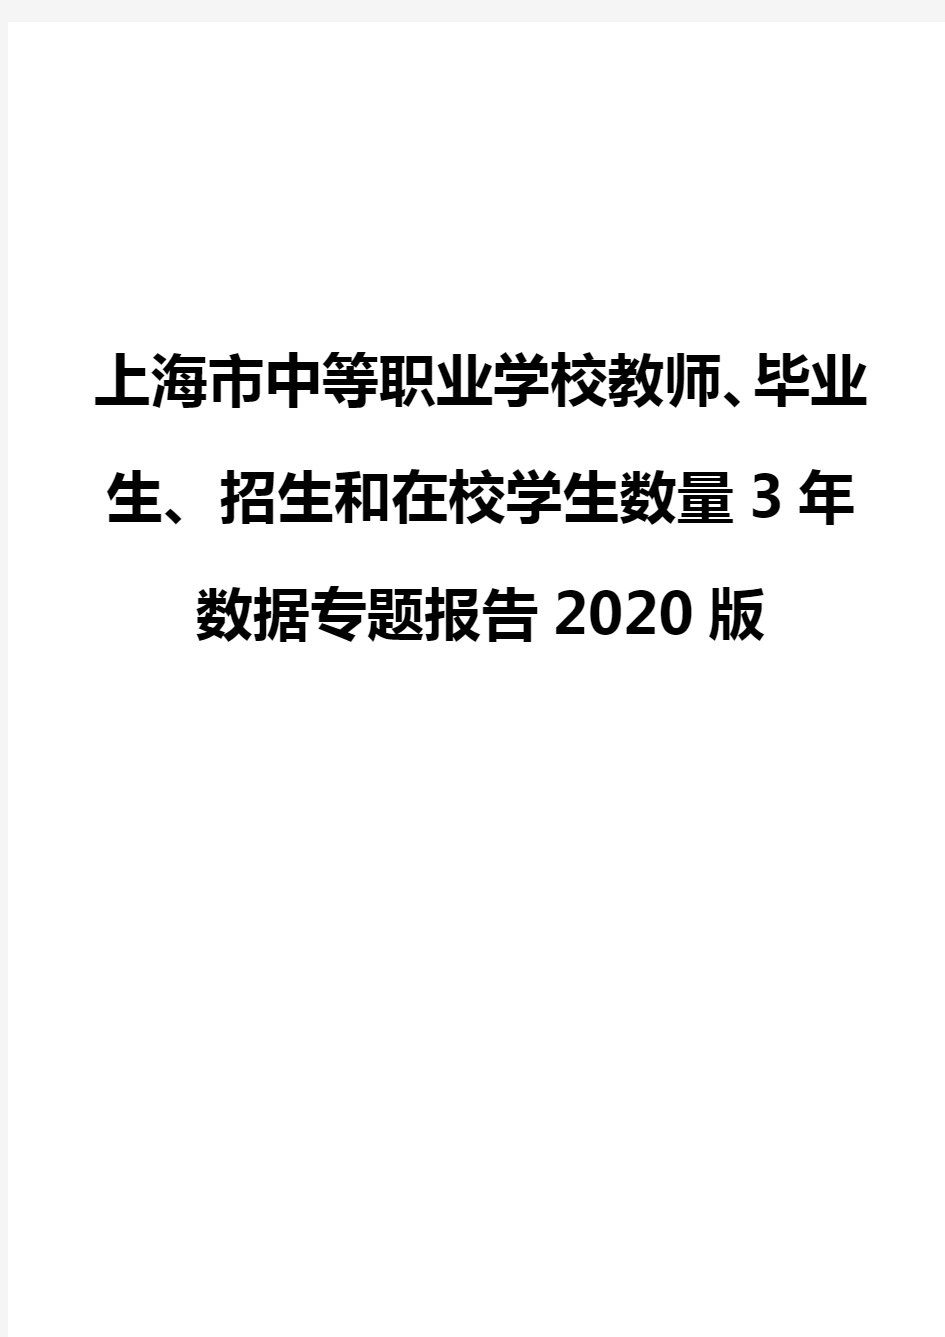 上海市中等职业学校教师、毕业生、招生和在校学生数量3年数据专题报告2020版